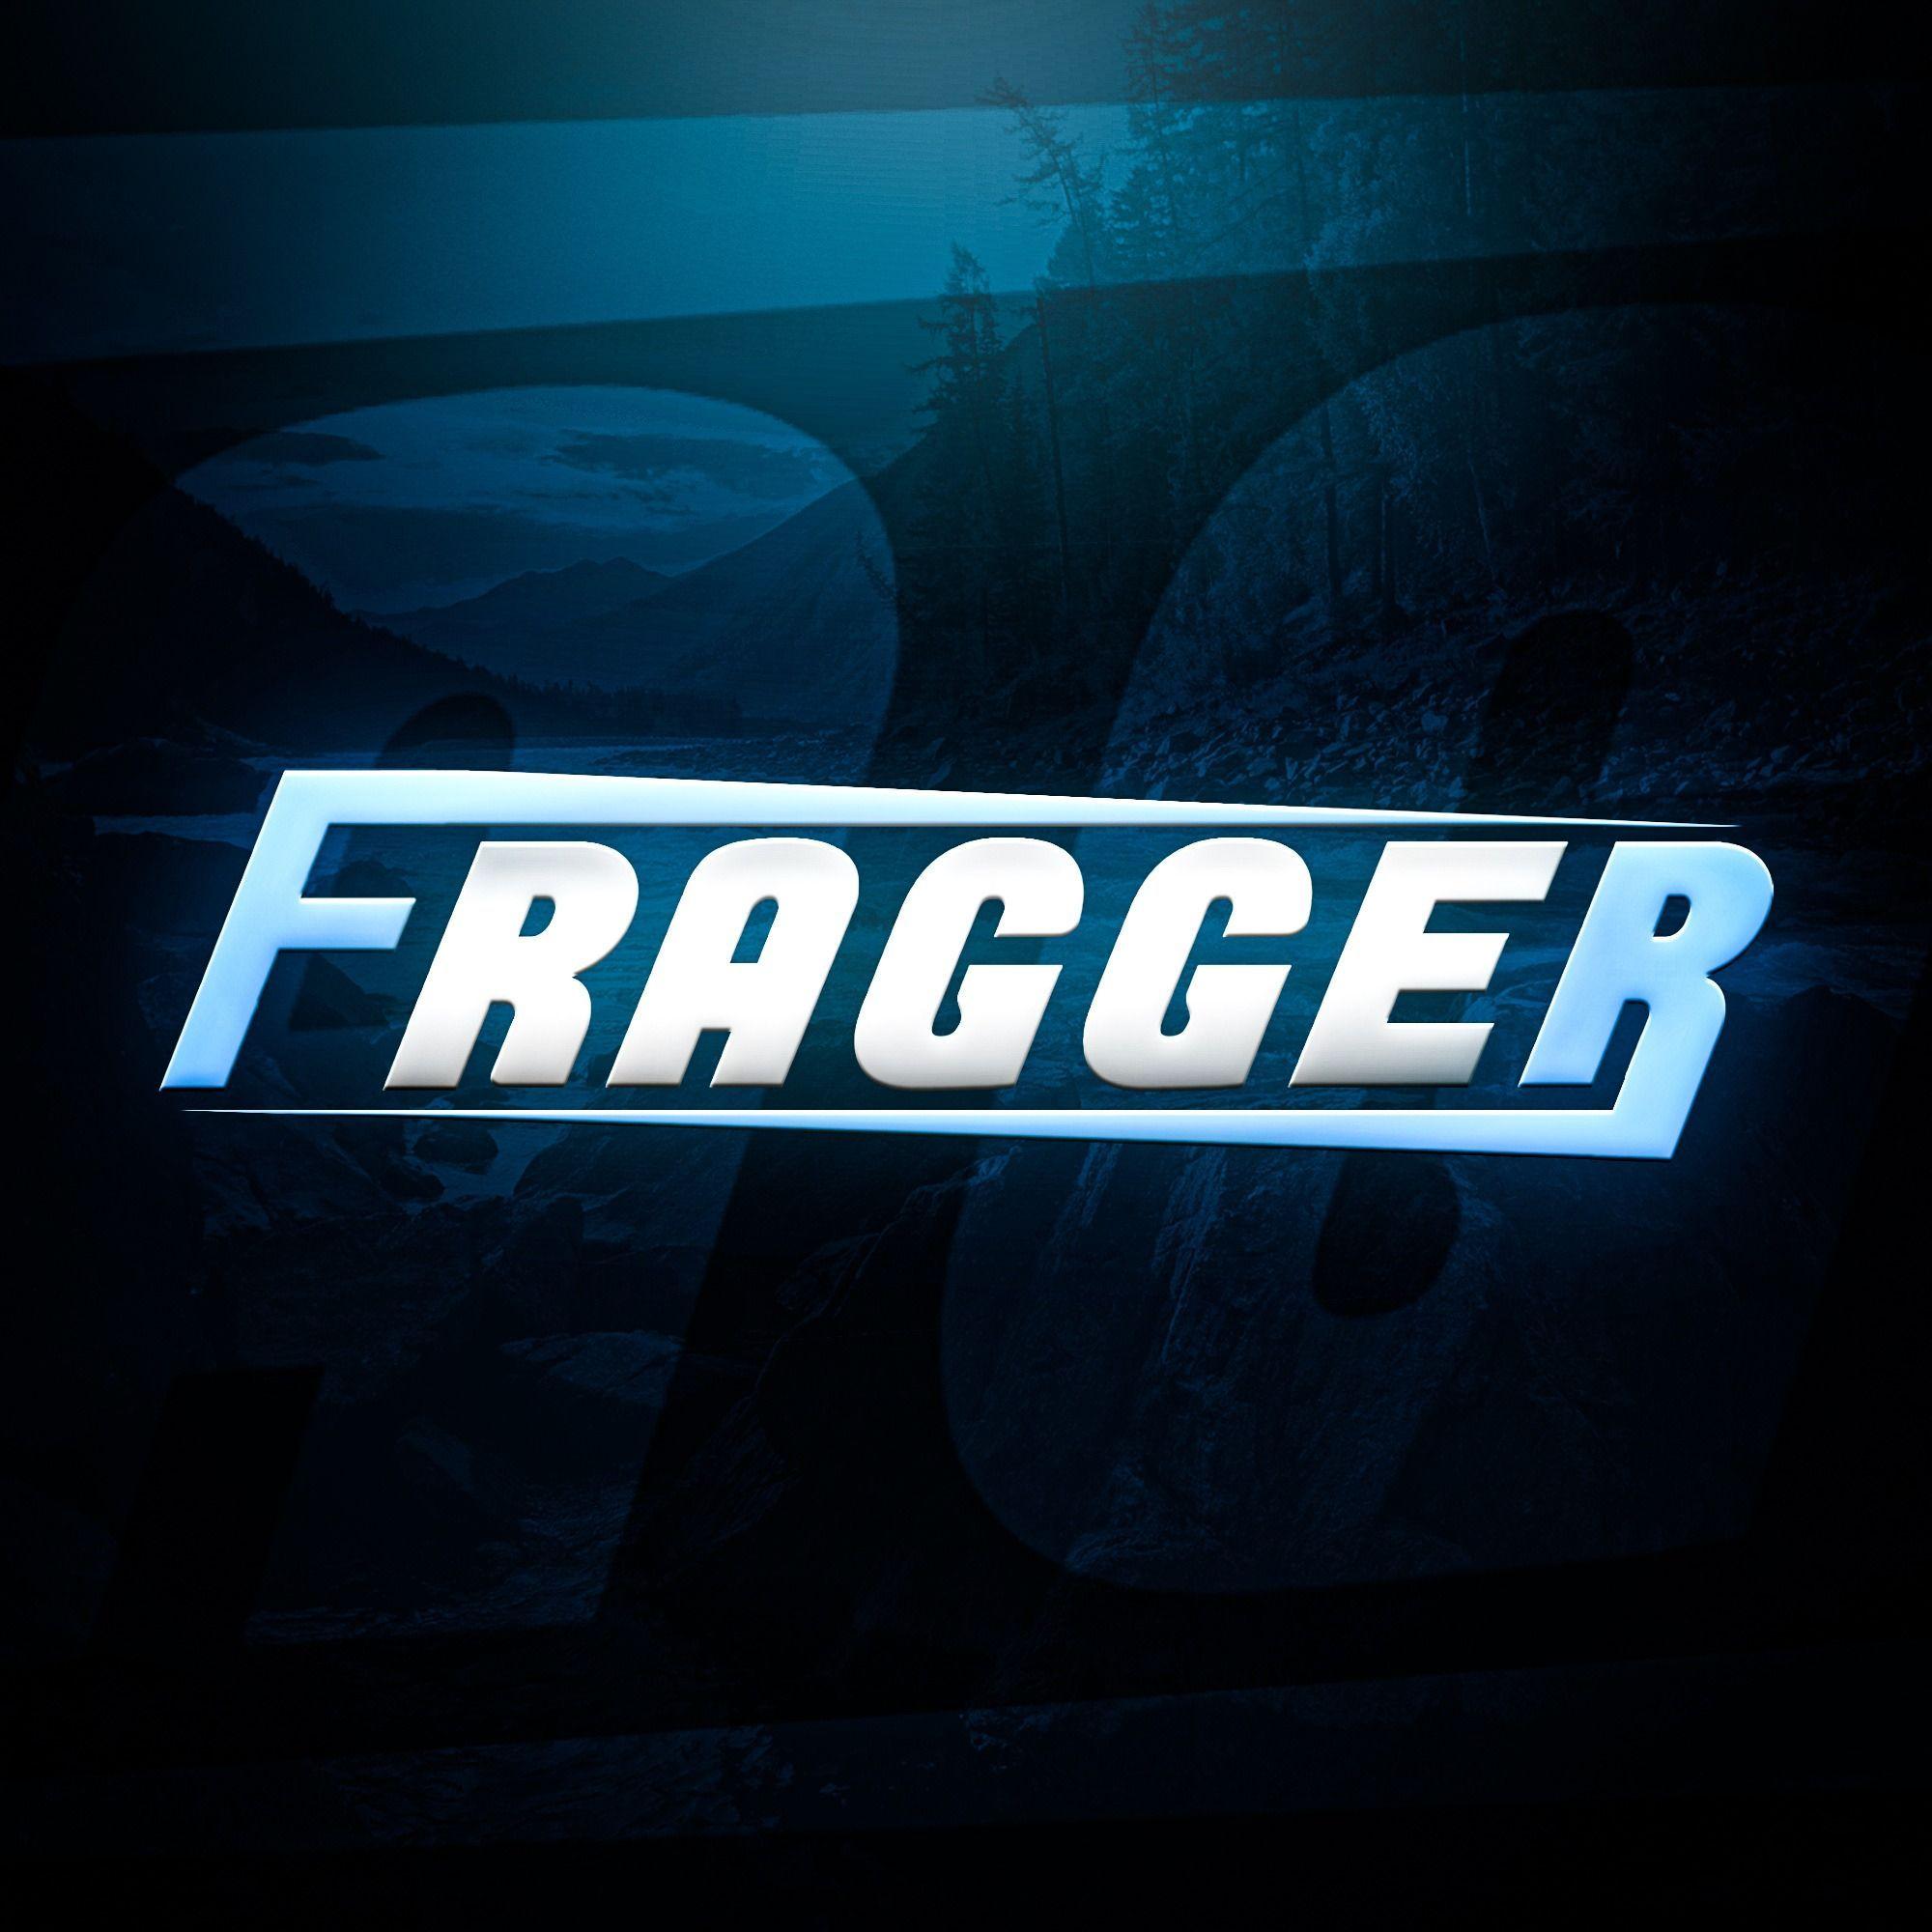 Player fraGGGer avatar